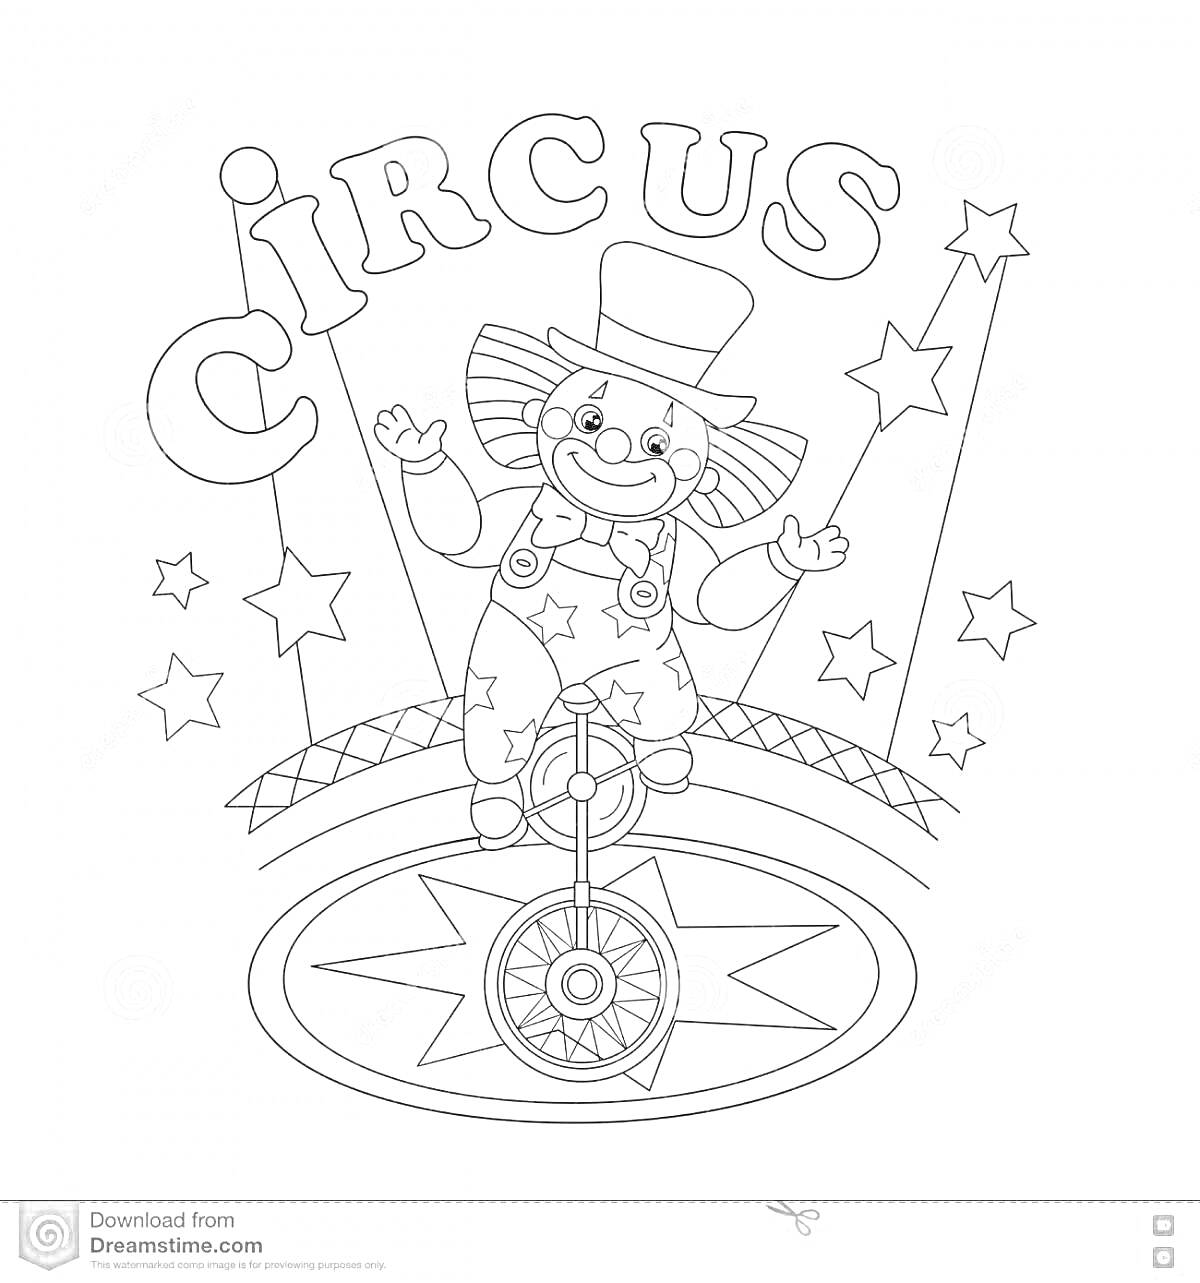 На раскраске изображено: Цирк, Звезды, Цирковая арена, Одноколесный велосипед, Цилиндр